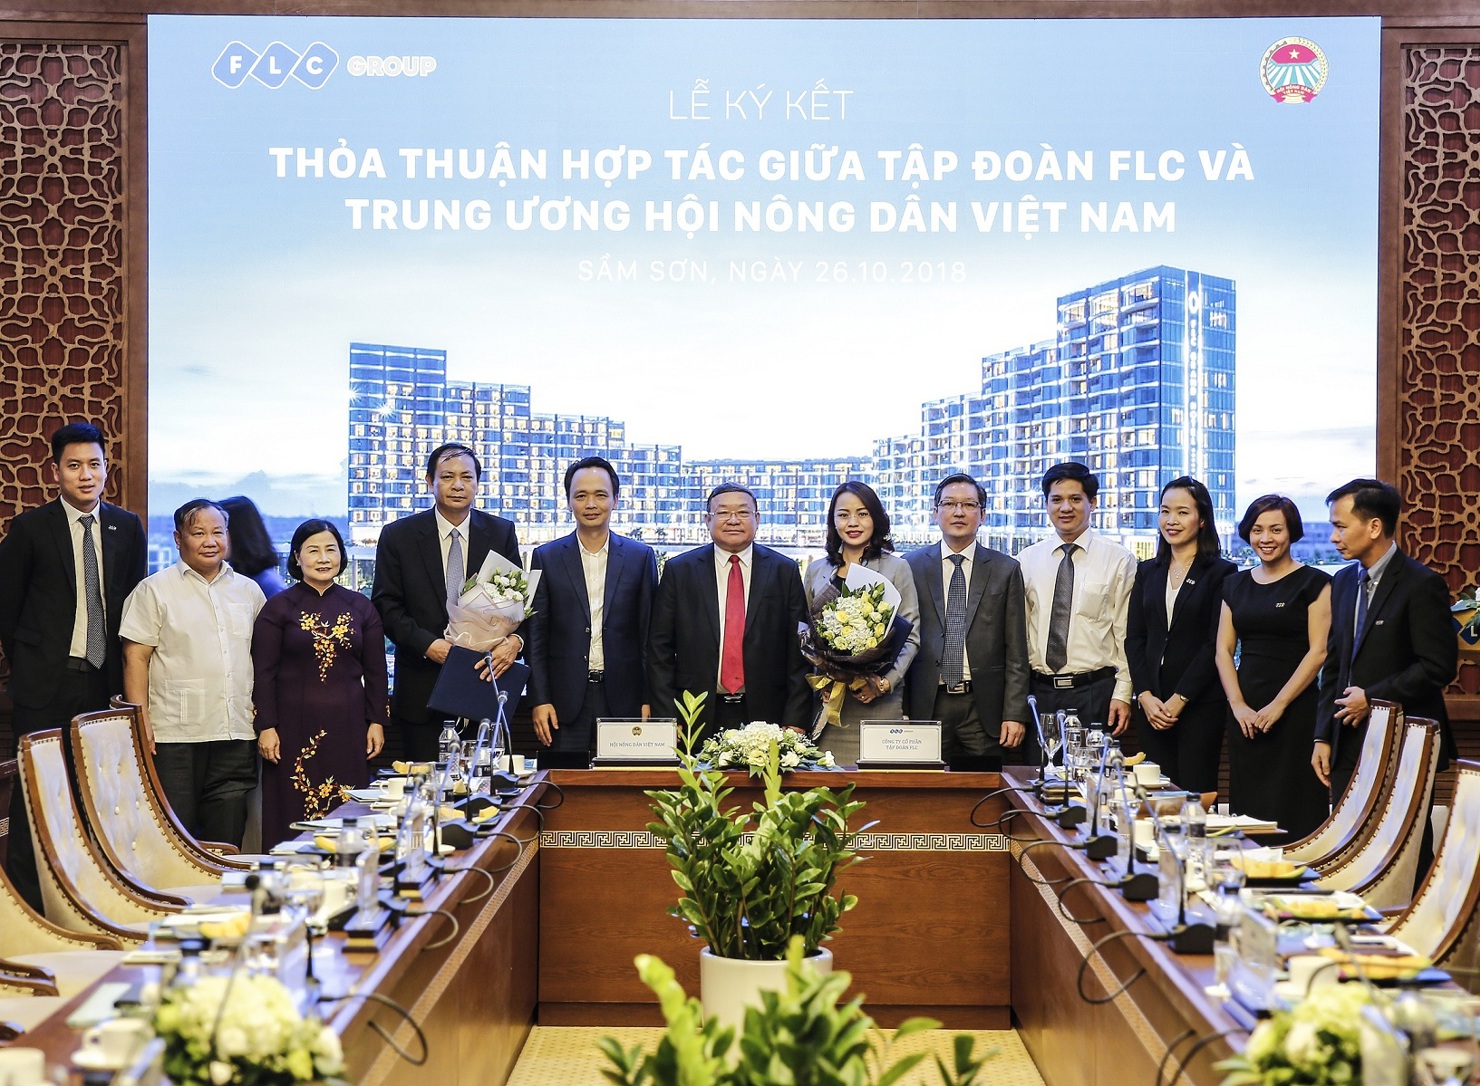 Lễ kí thỏa thuận hợp tác giữa Tập đoàn FLC và Trung ương Hội Nông dân Việt Nam.